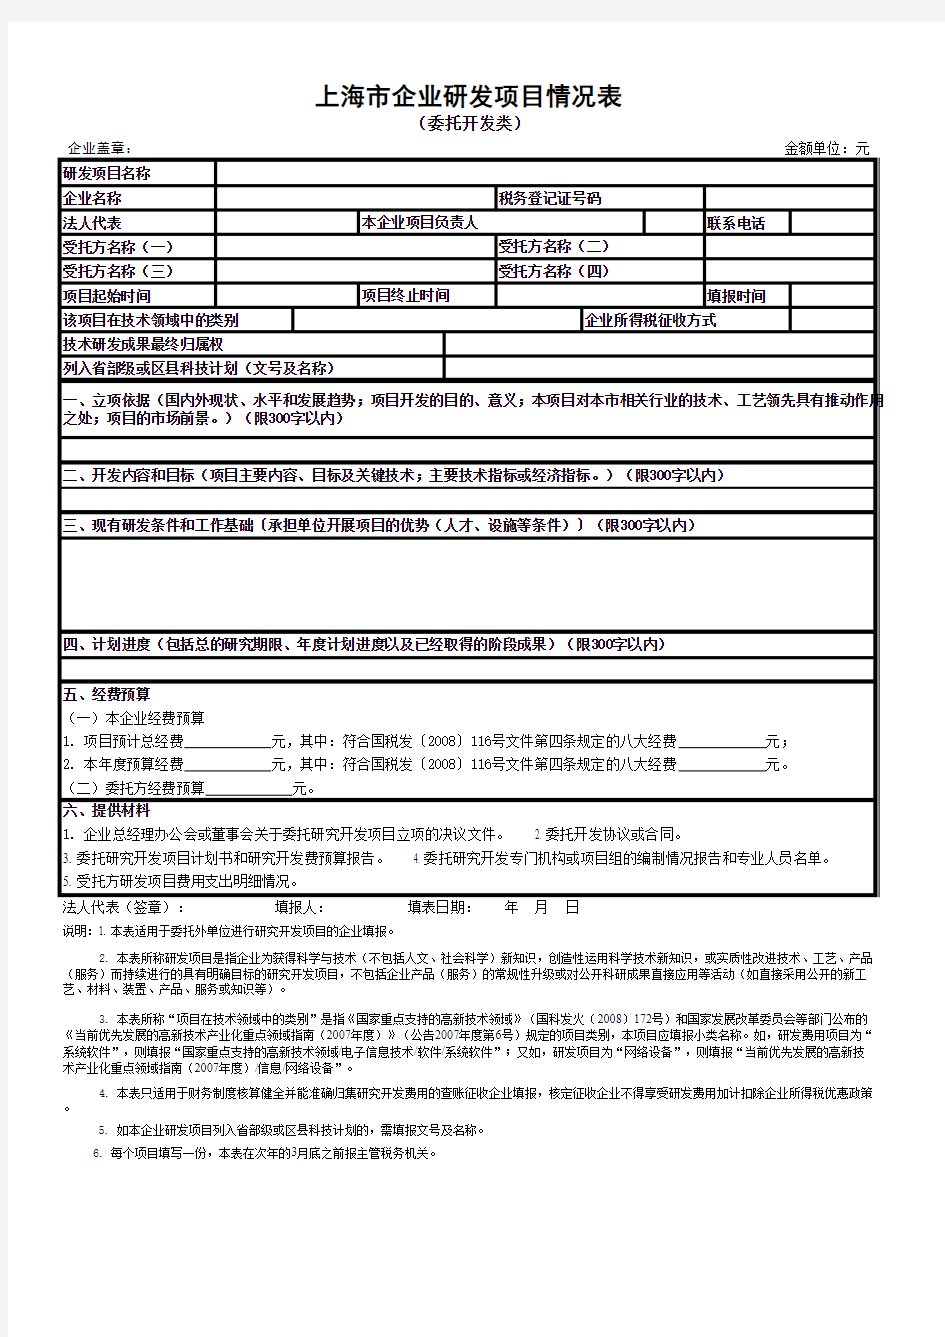 上海市企业研发项目情况表(委托开发类)